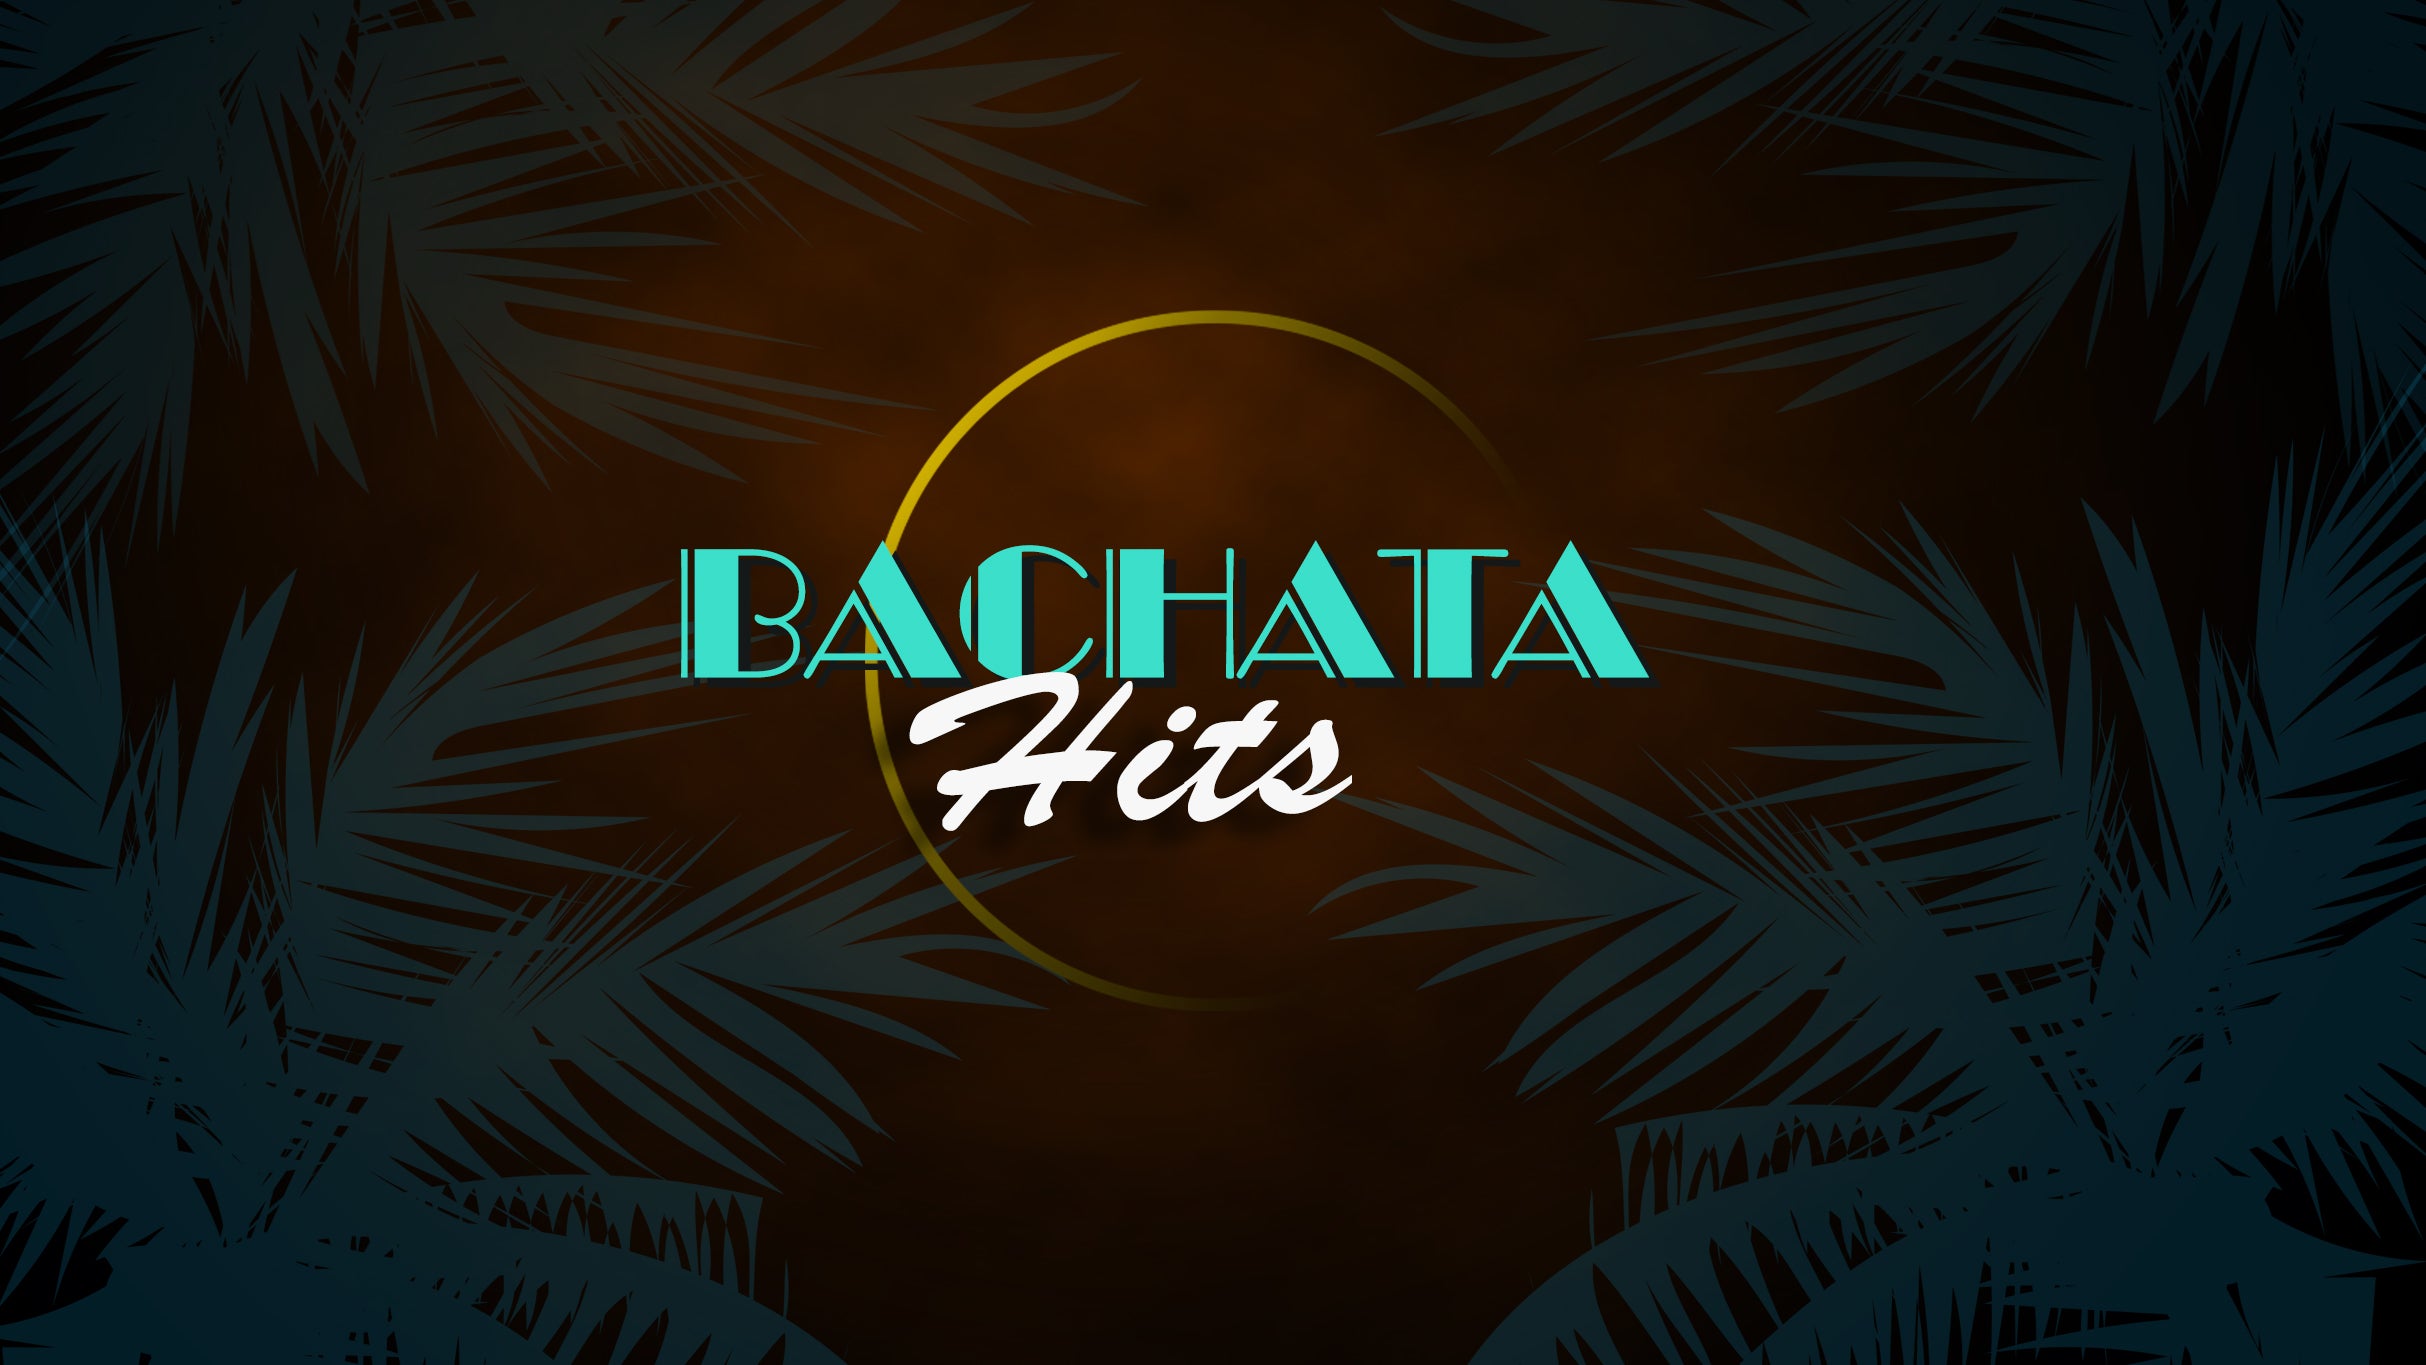 Bachata Hits in Miami promo photo for Venue presale offer code